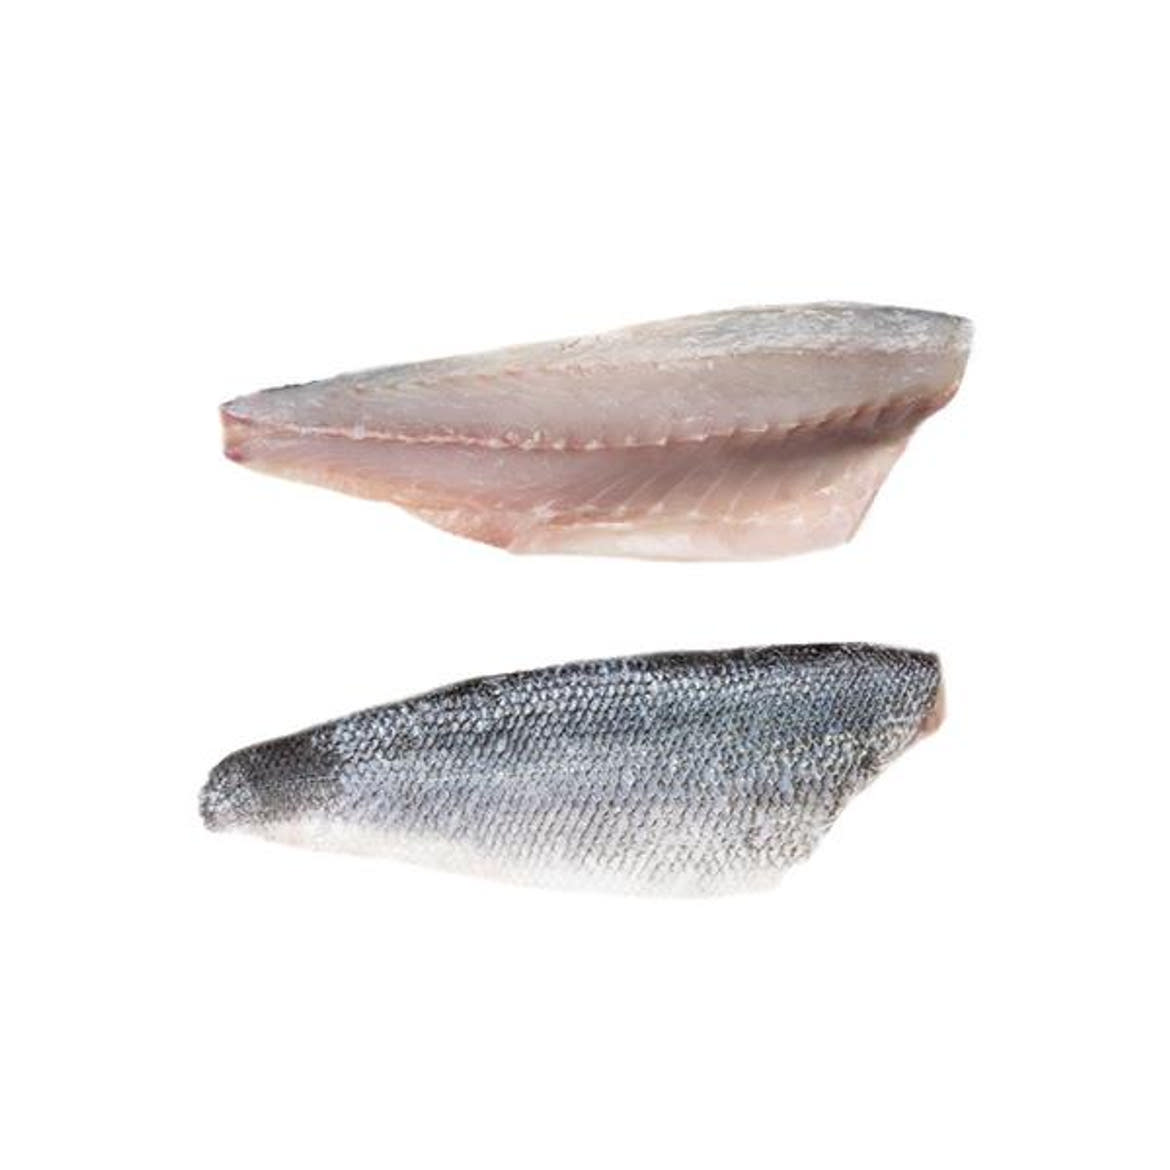 Tengeri süllő filé 6-800g-os halból (Adria)